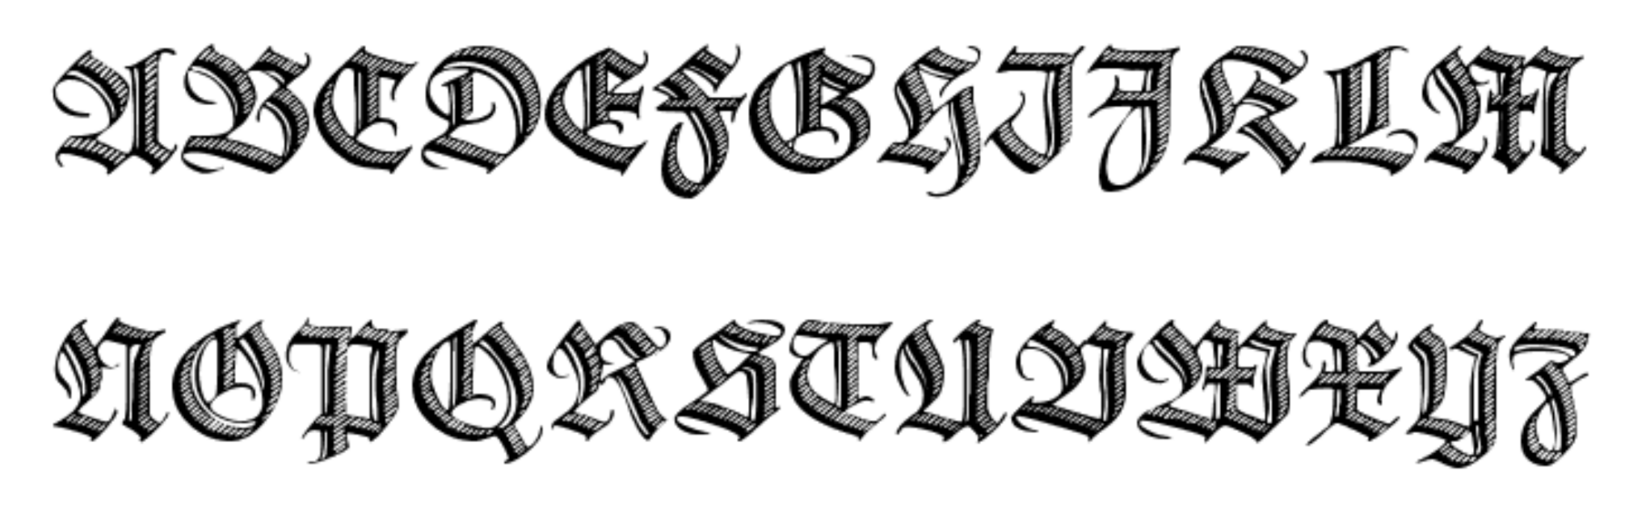 Deutsche Zierschrift (test) is a German blackletter fraktur font.